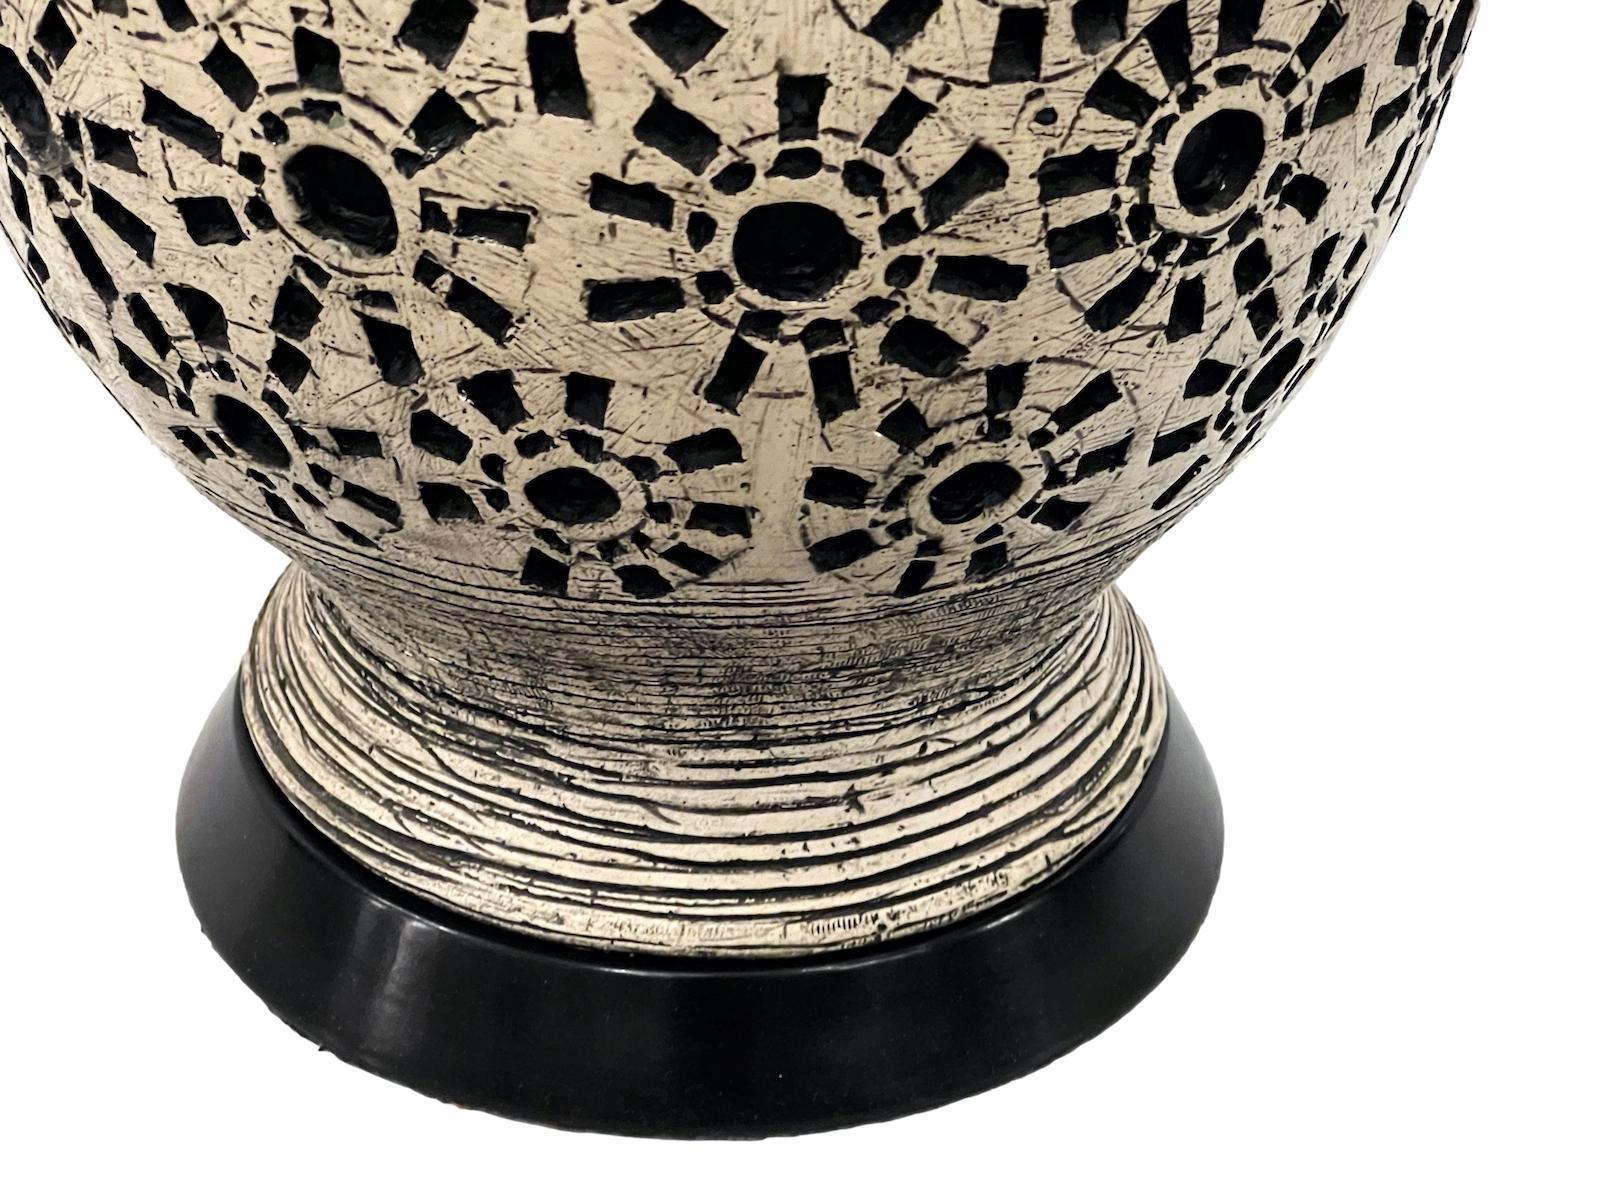 Eine italienische Tischlampe aus den 1960er Jahren mit stilisiertem Sonnenschliff-Motiv.

Abmessungen:
Höhe: 11